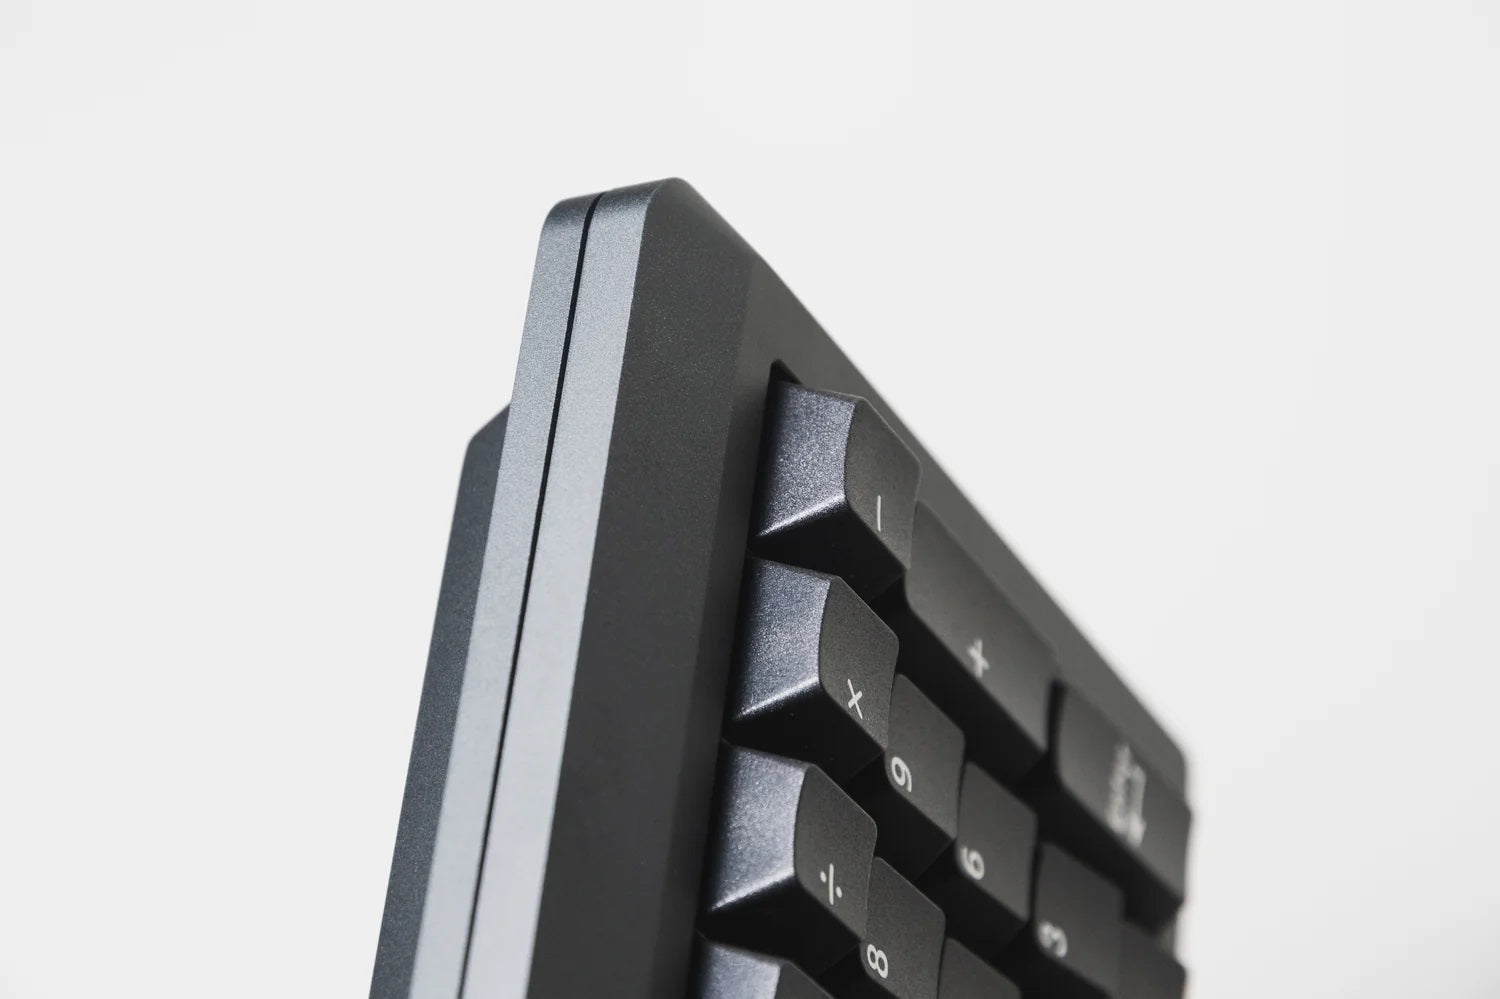 Vortex M0110A Aluminum Barebones Hotswap DIY Keyboard Kit MK991UZI46 |63162|